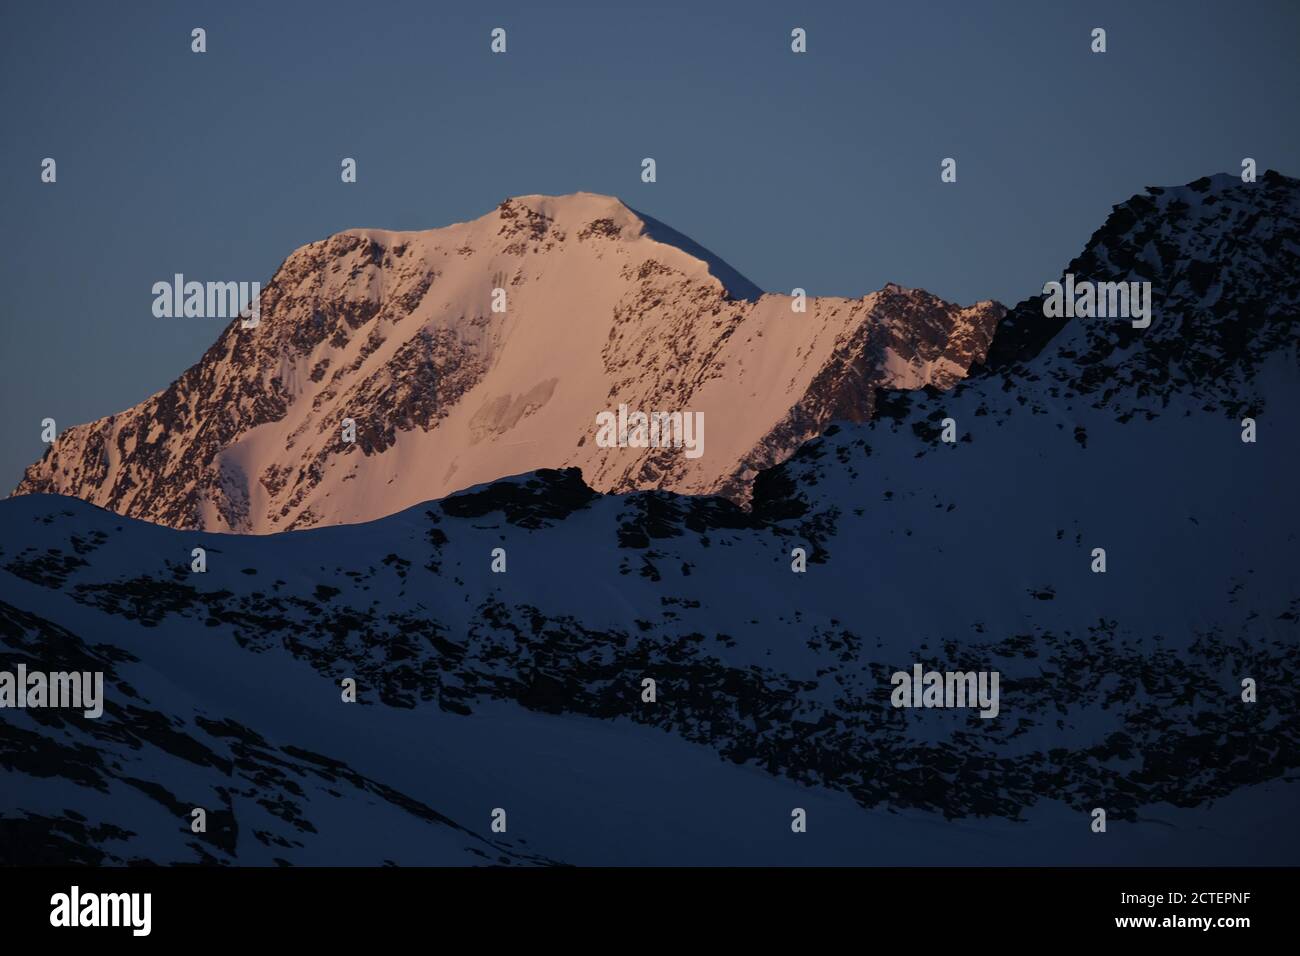 Weissmies est faccia alla luce del mattino, una vetta alta 4000m nelle alpi svizzere Foto Stock